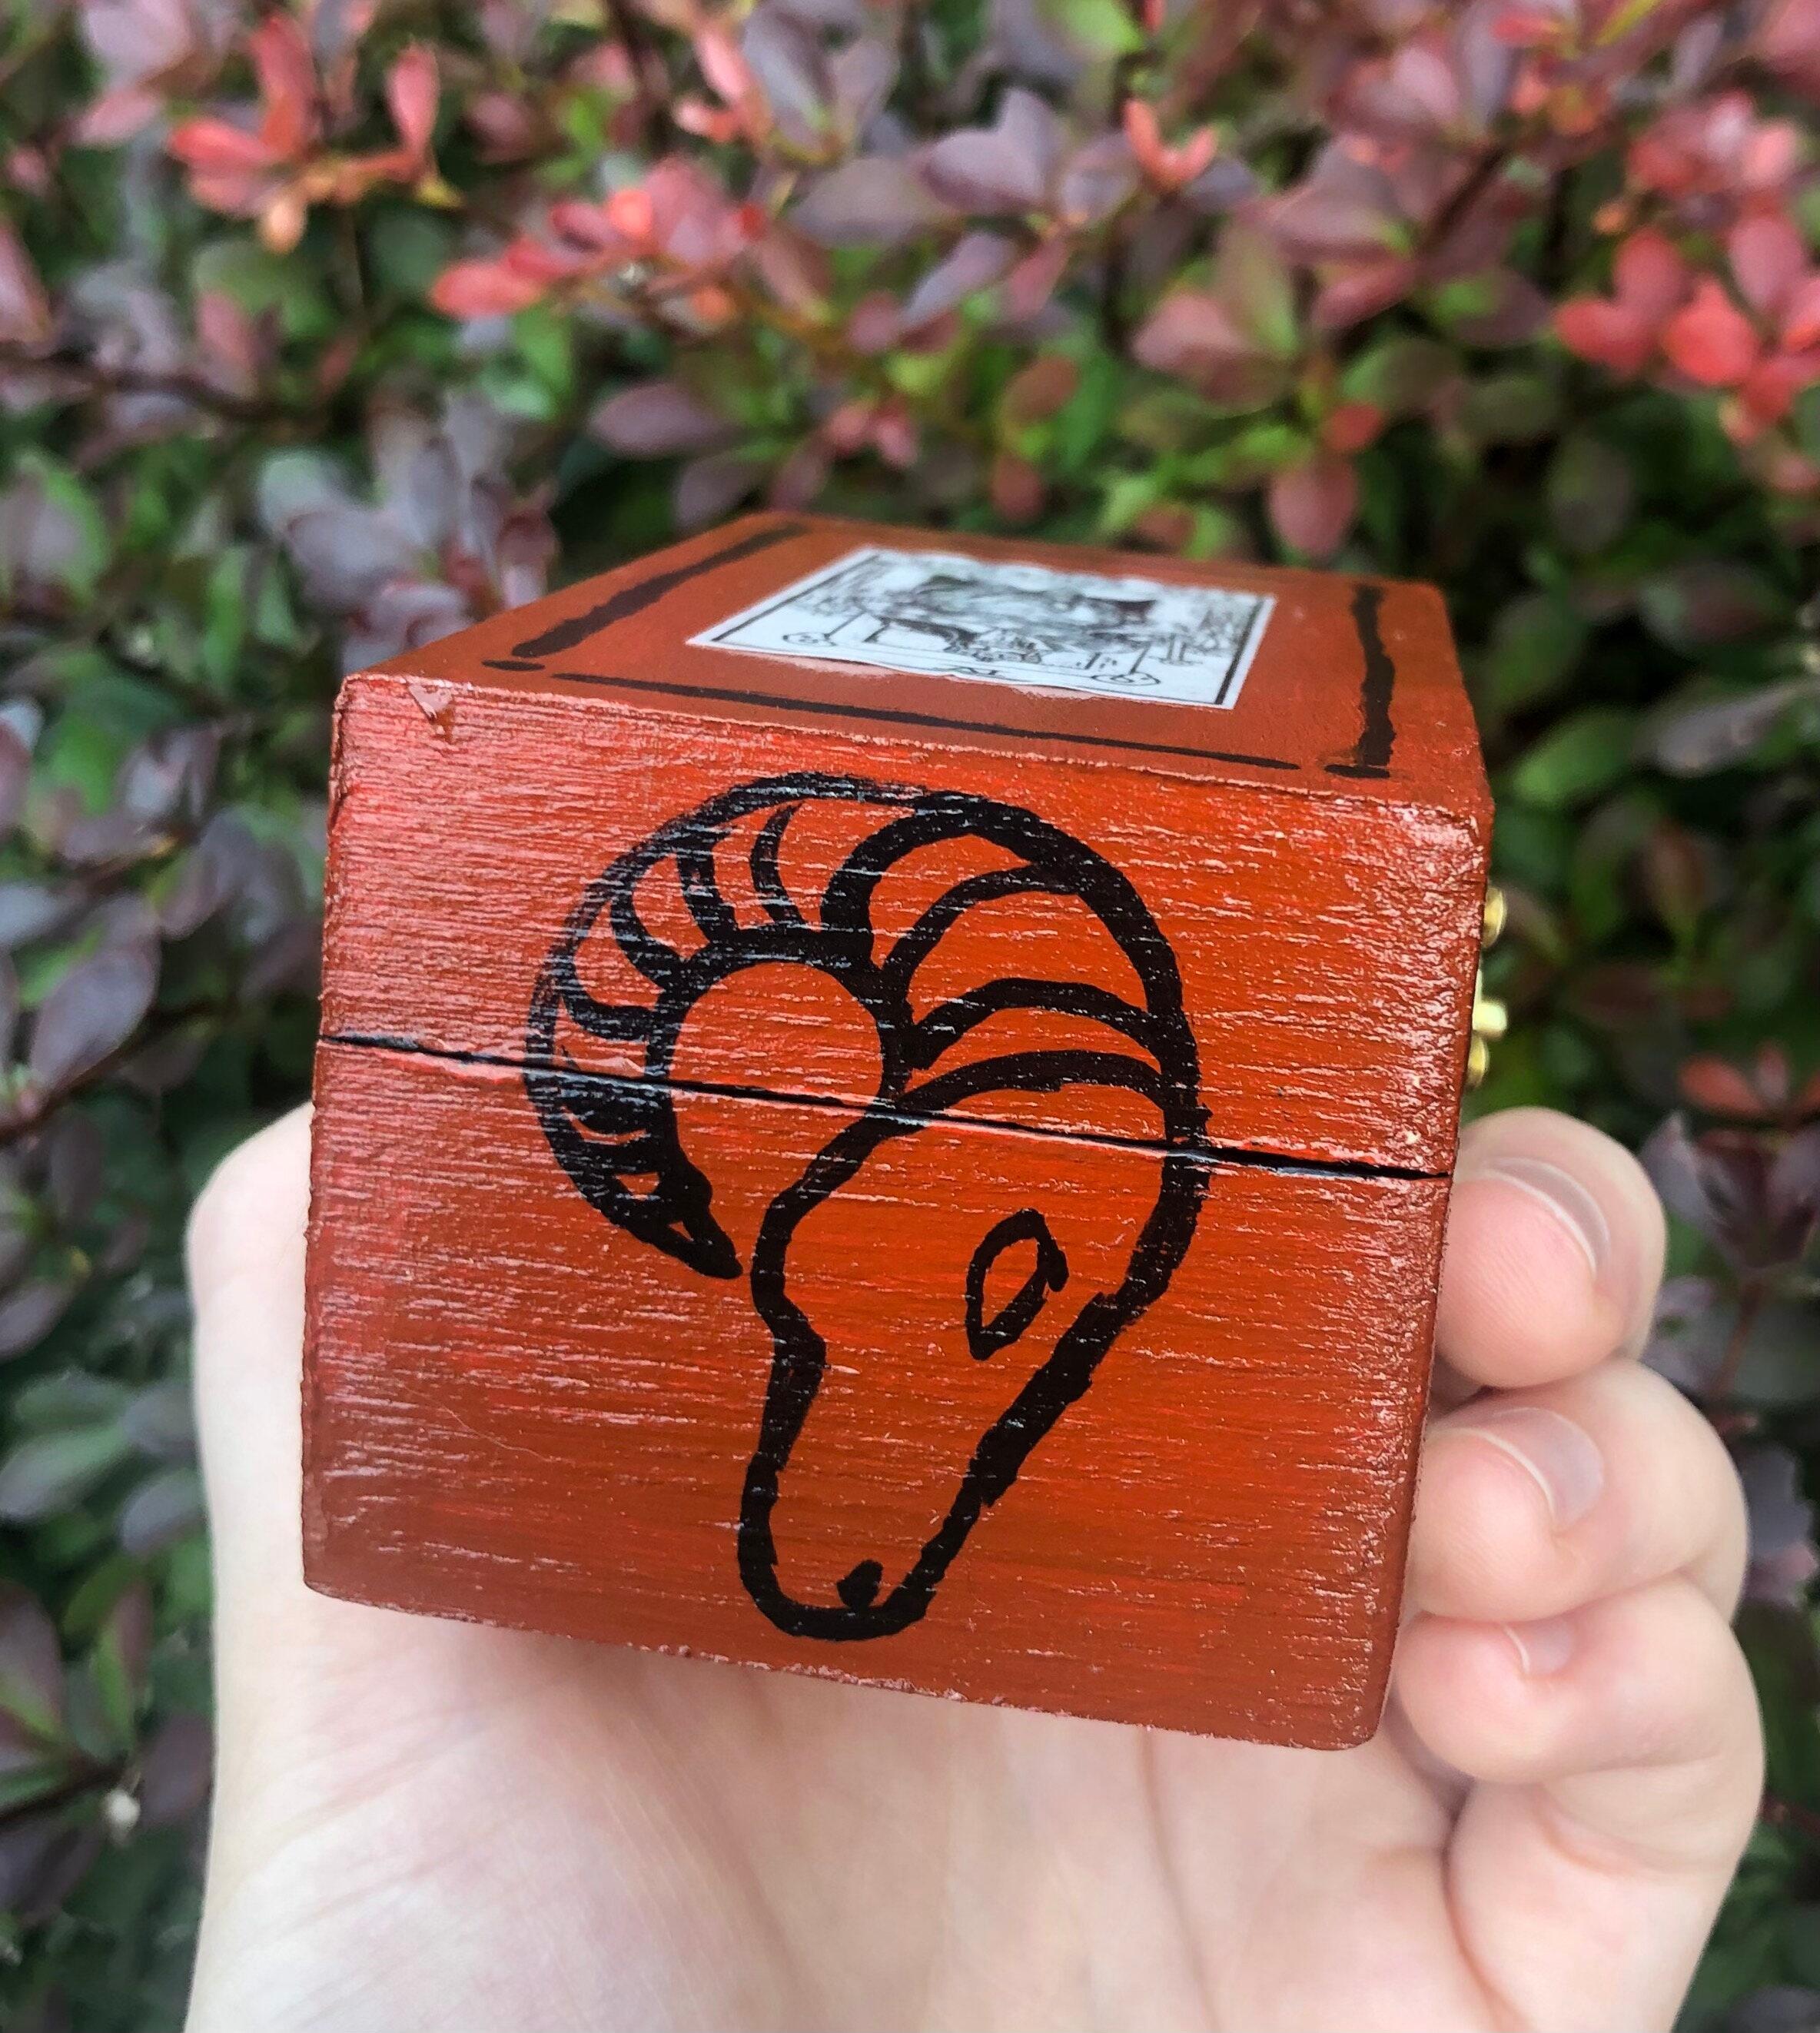 Wood Burning on A Box